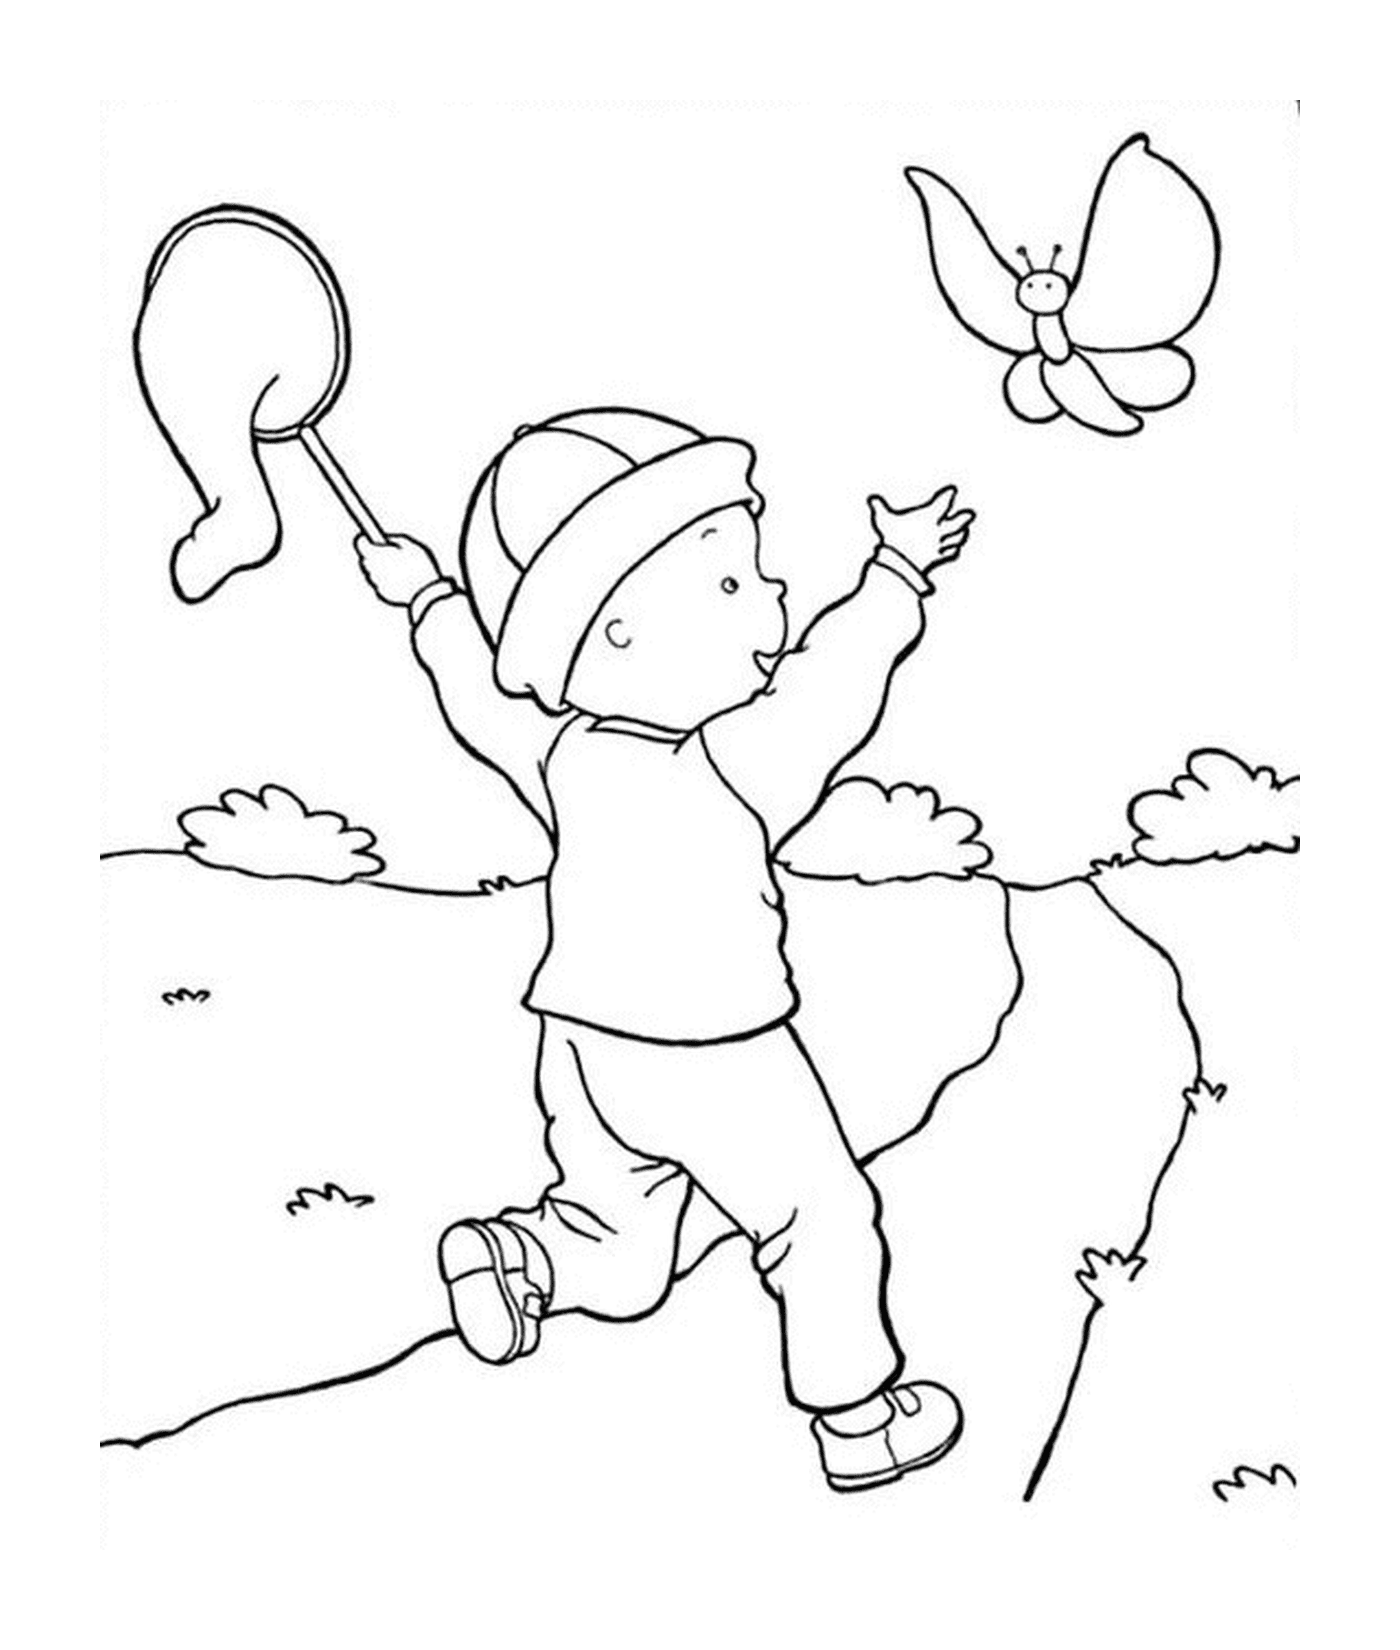  Criança voando pipa 